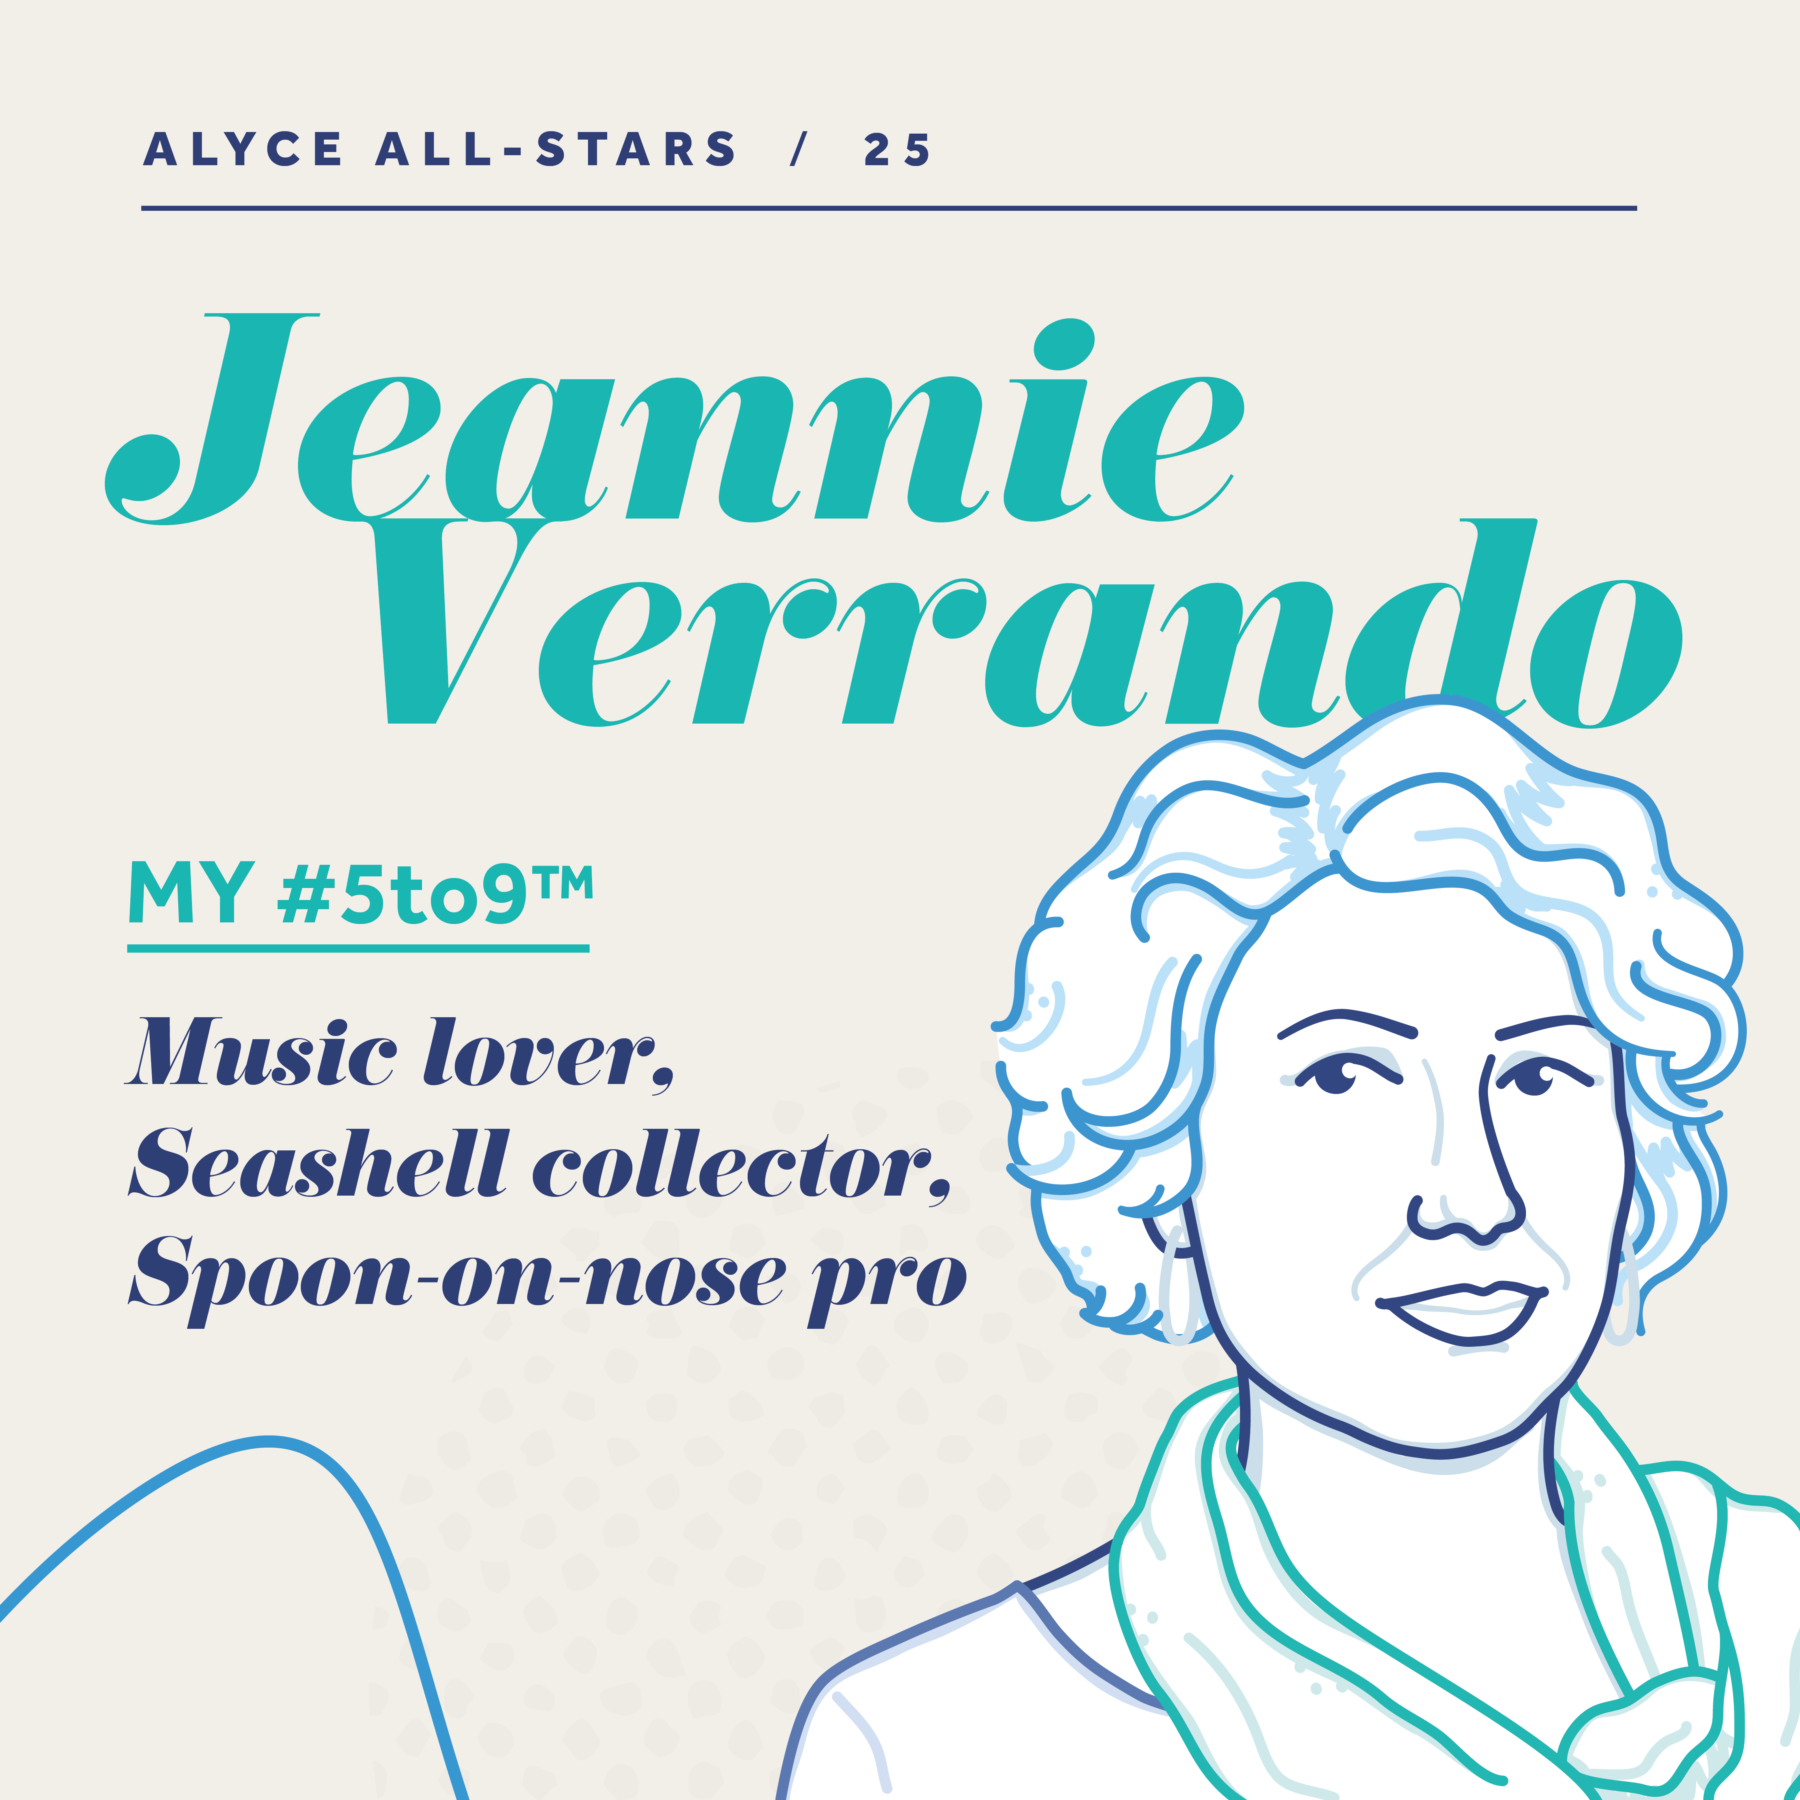 Jeannie Verrando, All Star